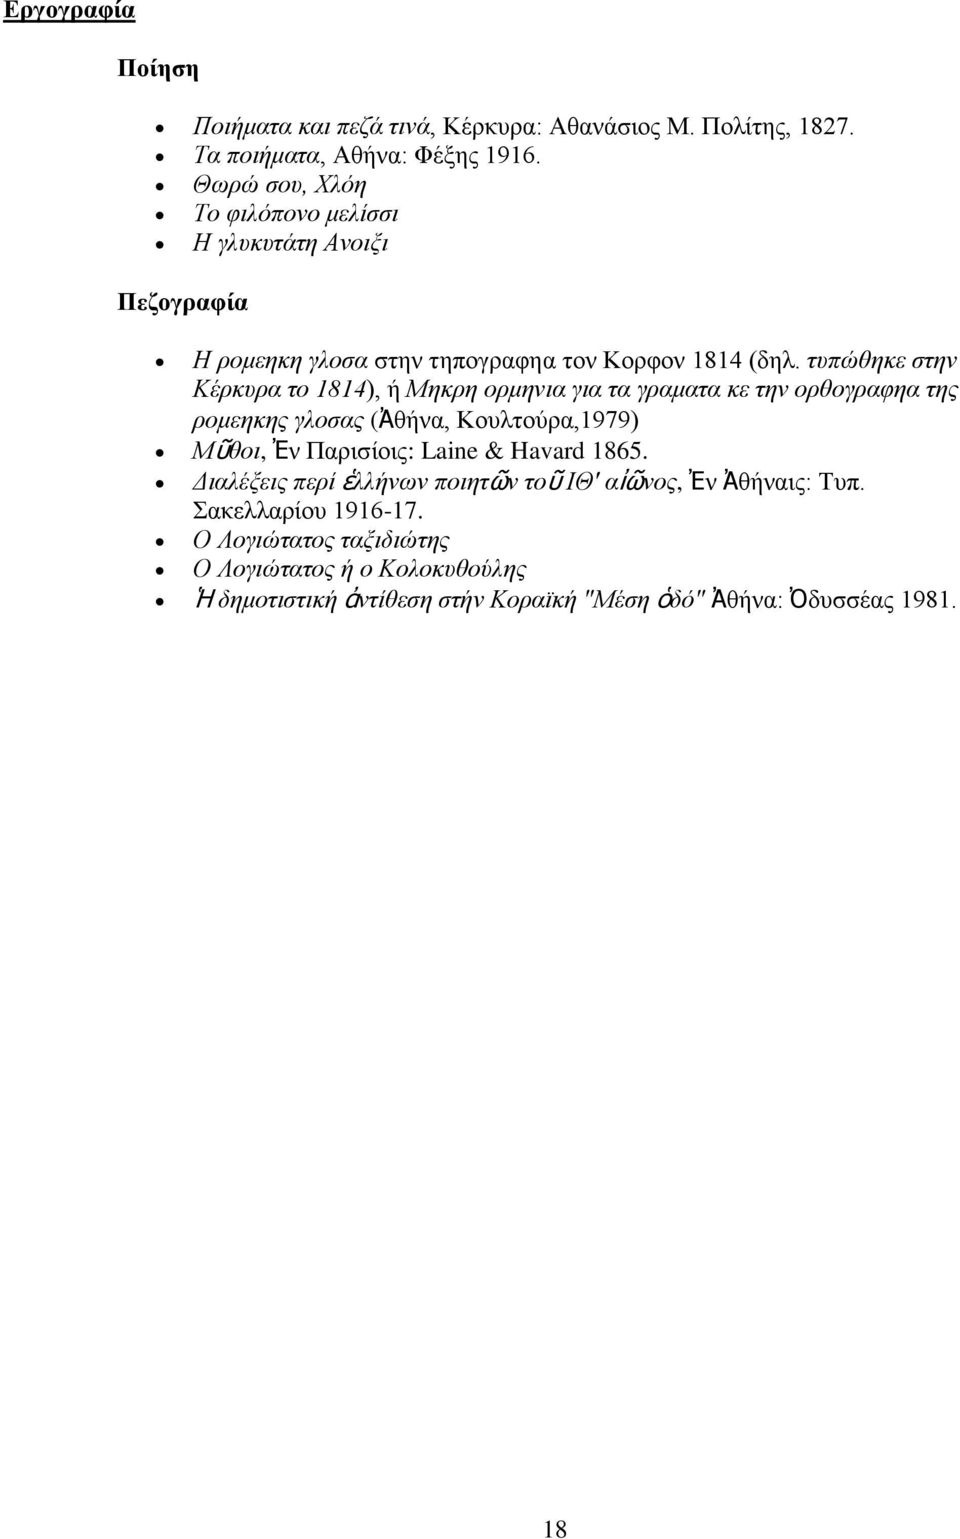 τυπώθηκε στην Κέρκυρα το 1814), ή Μηκρη ορμηνια για τα γραματα κε την ορθογραφηα της ρομεηκης γλοσας (Ἀθήνα, Κουλτούρα,1979) Μῦθοι, Ἐν Παρισίοις: Laine